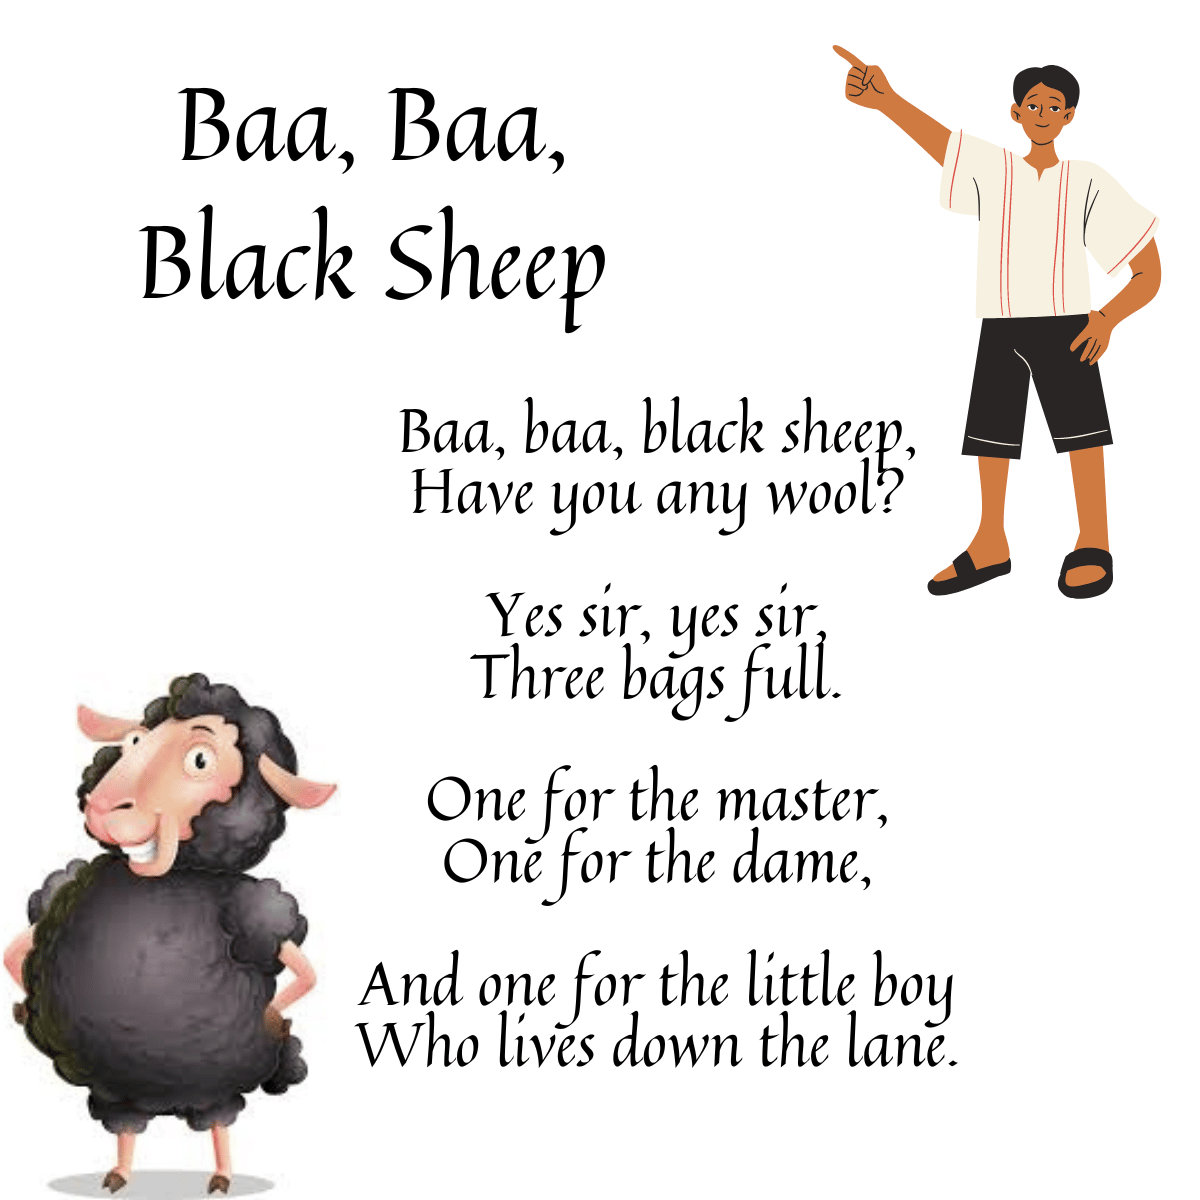 Baa, Baa, Black Sheep lyrics